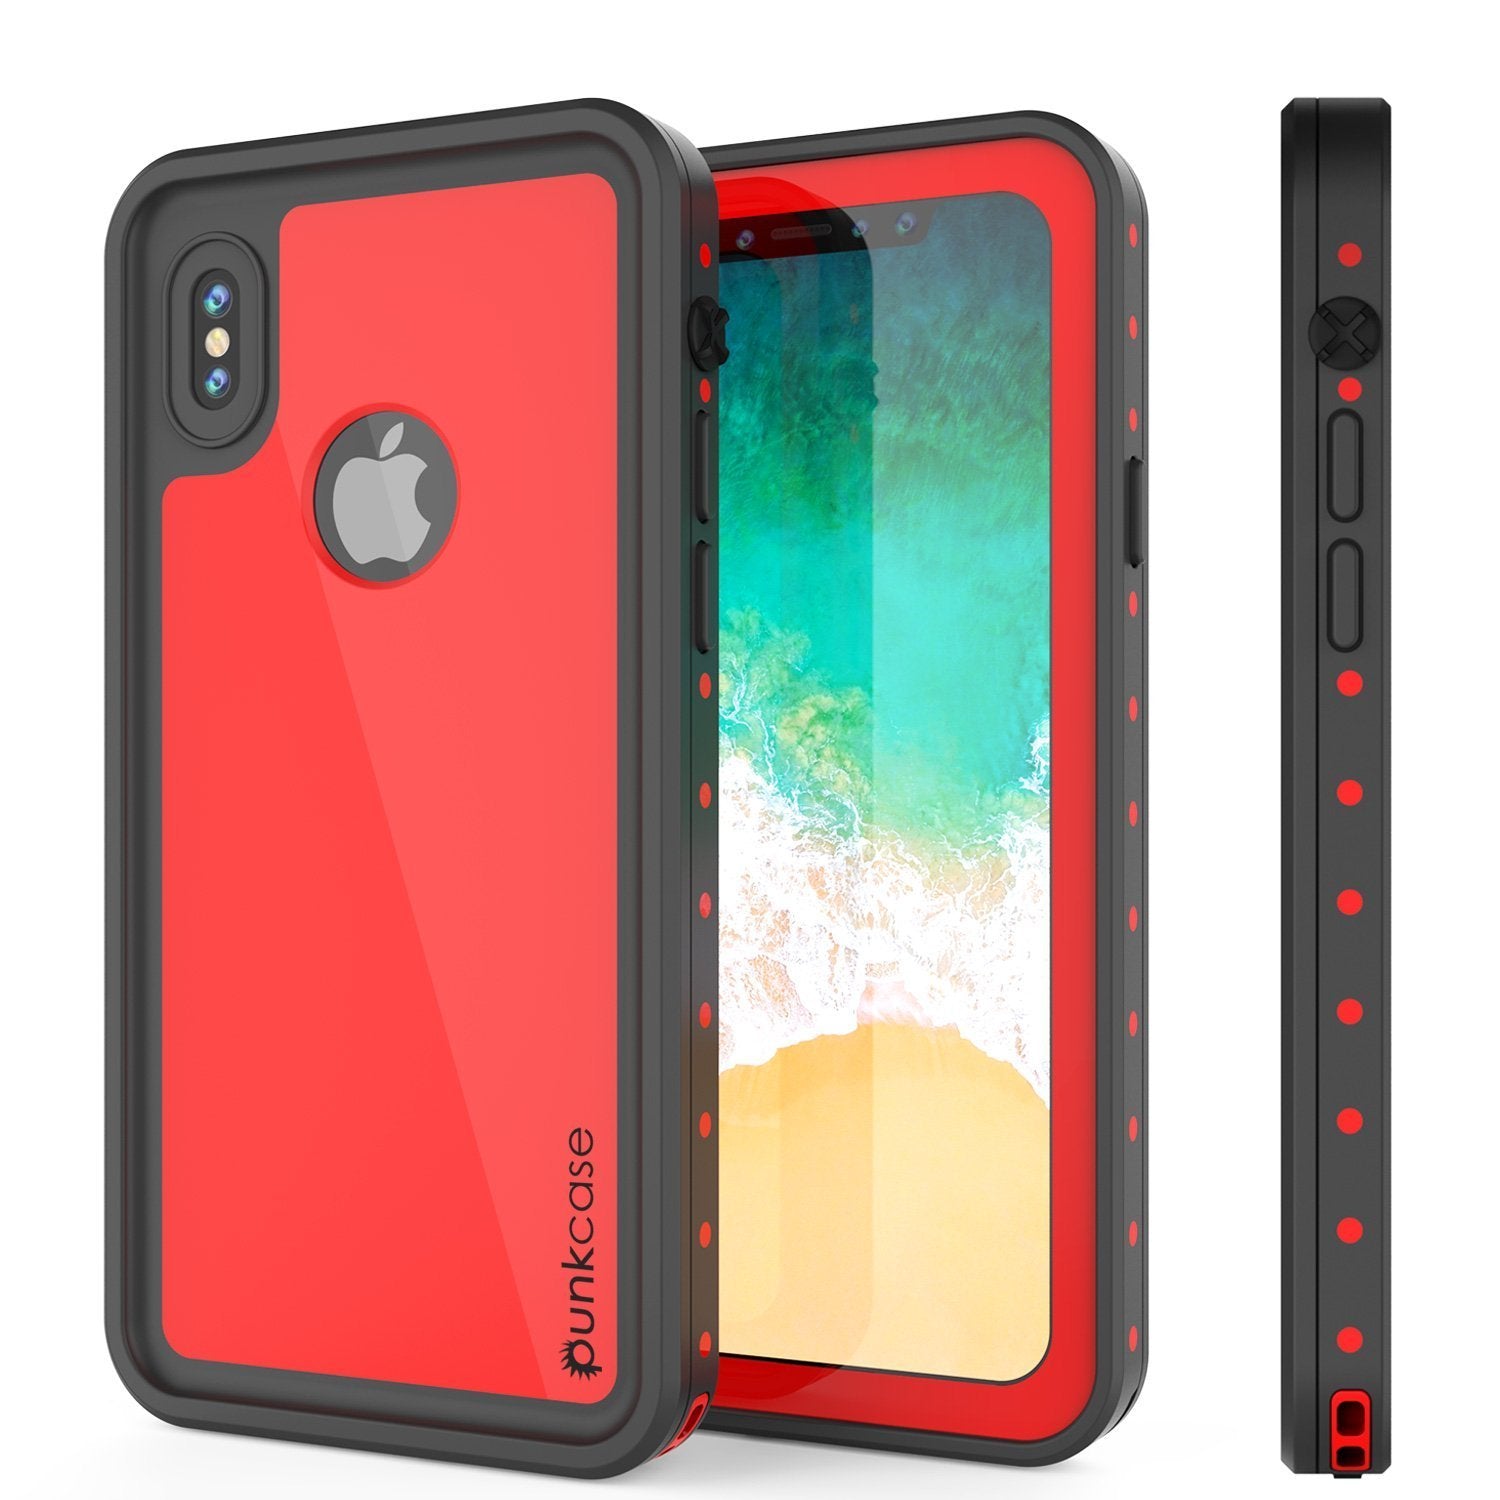 iPhone XR Waterproof IP68 Case, Punkcase [Red] [StudStar Series] [Slim Fit]